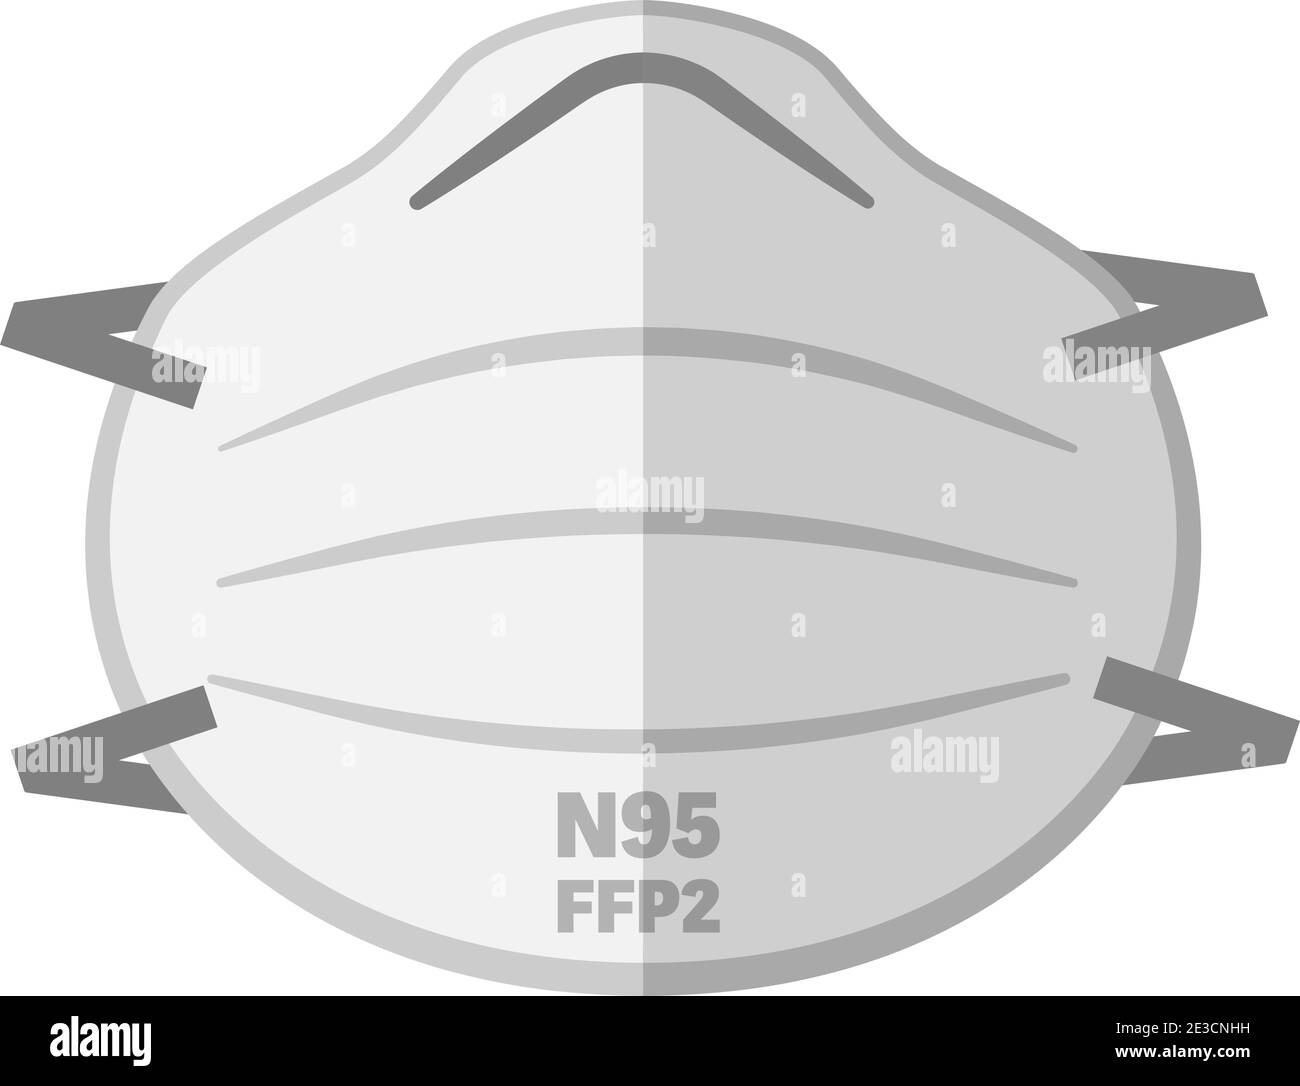 Illustration simple du vecteur du masque facial FFP2 N95 Illustration de Vecteur